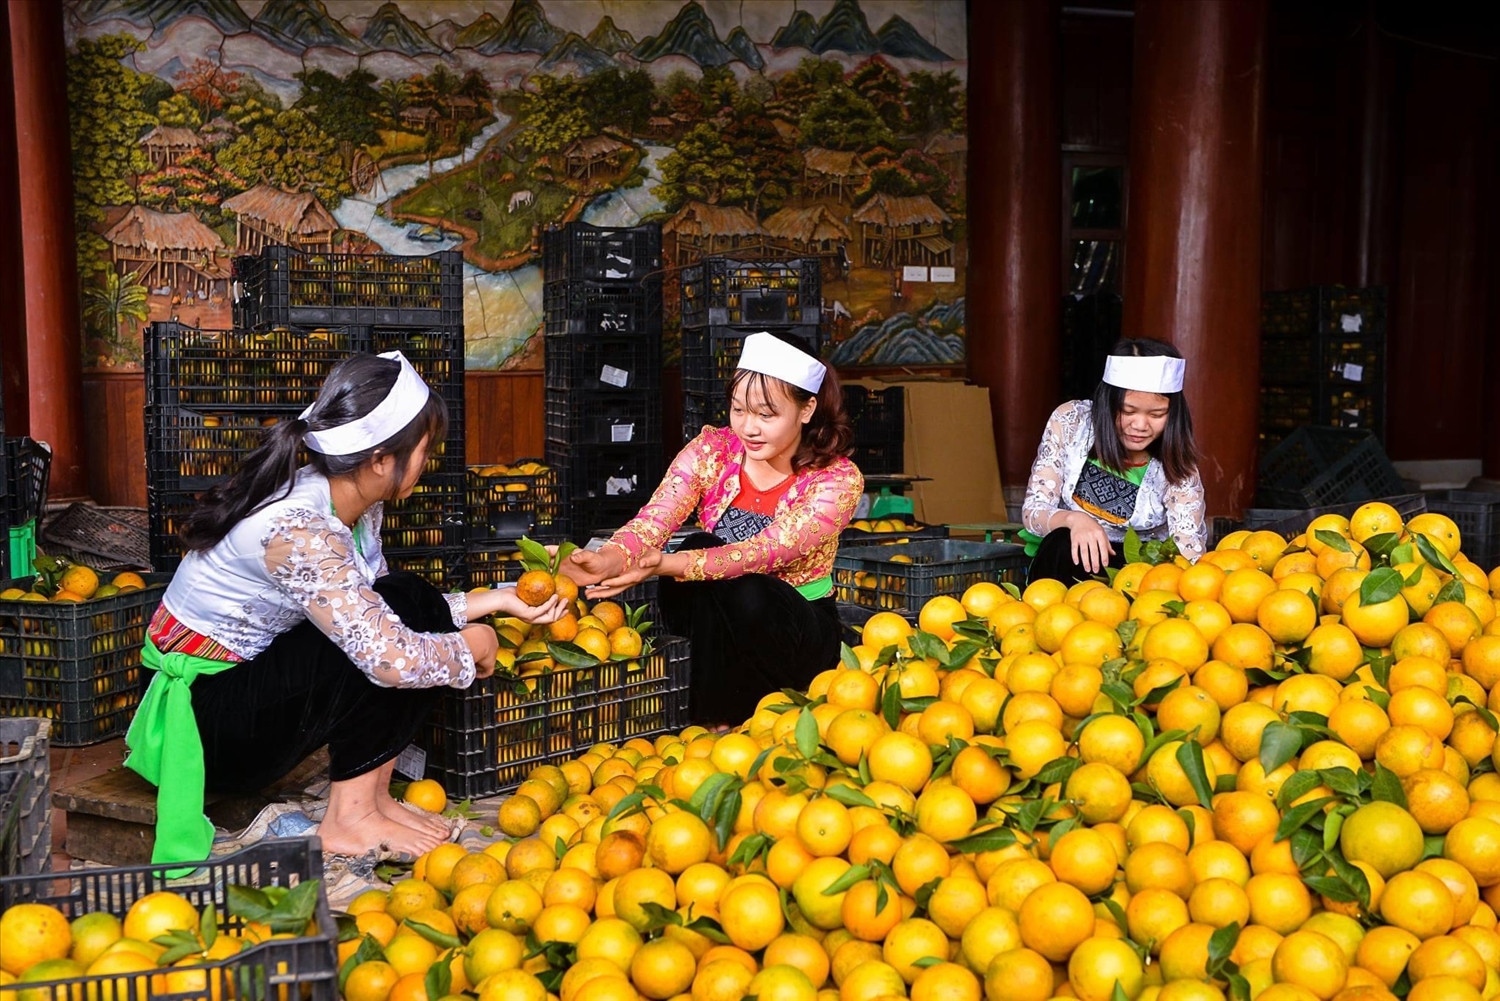 Nhiều mô hình nông nghiệp góp phần thúc đẩy phát triển kinh tế - xã hội vùng DTTS tỉnh Hoà Bình.